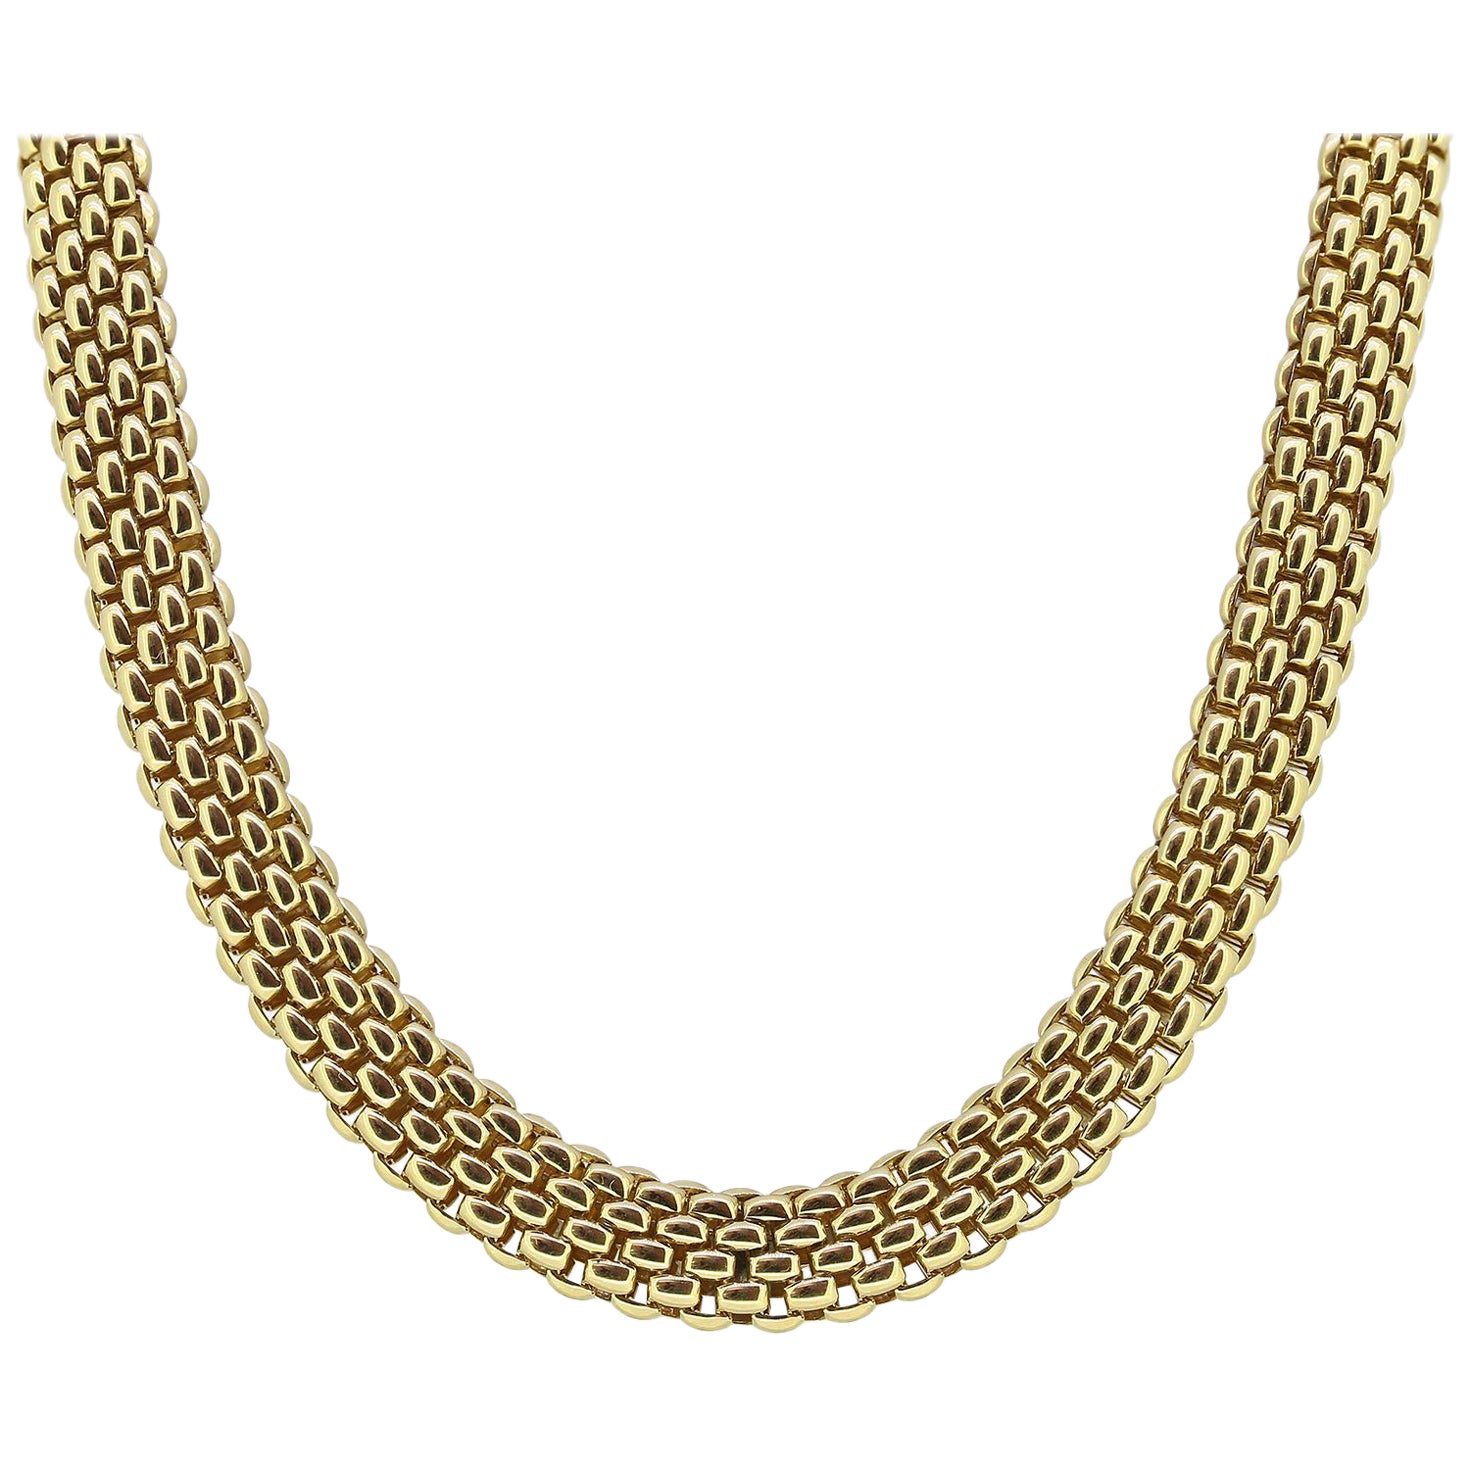 Fope Profili Chain Necklace